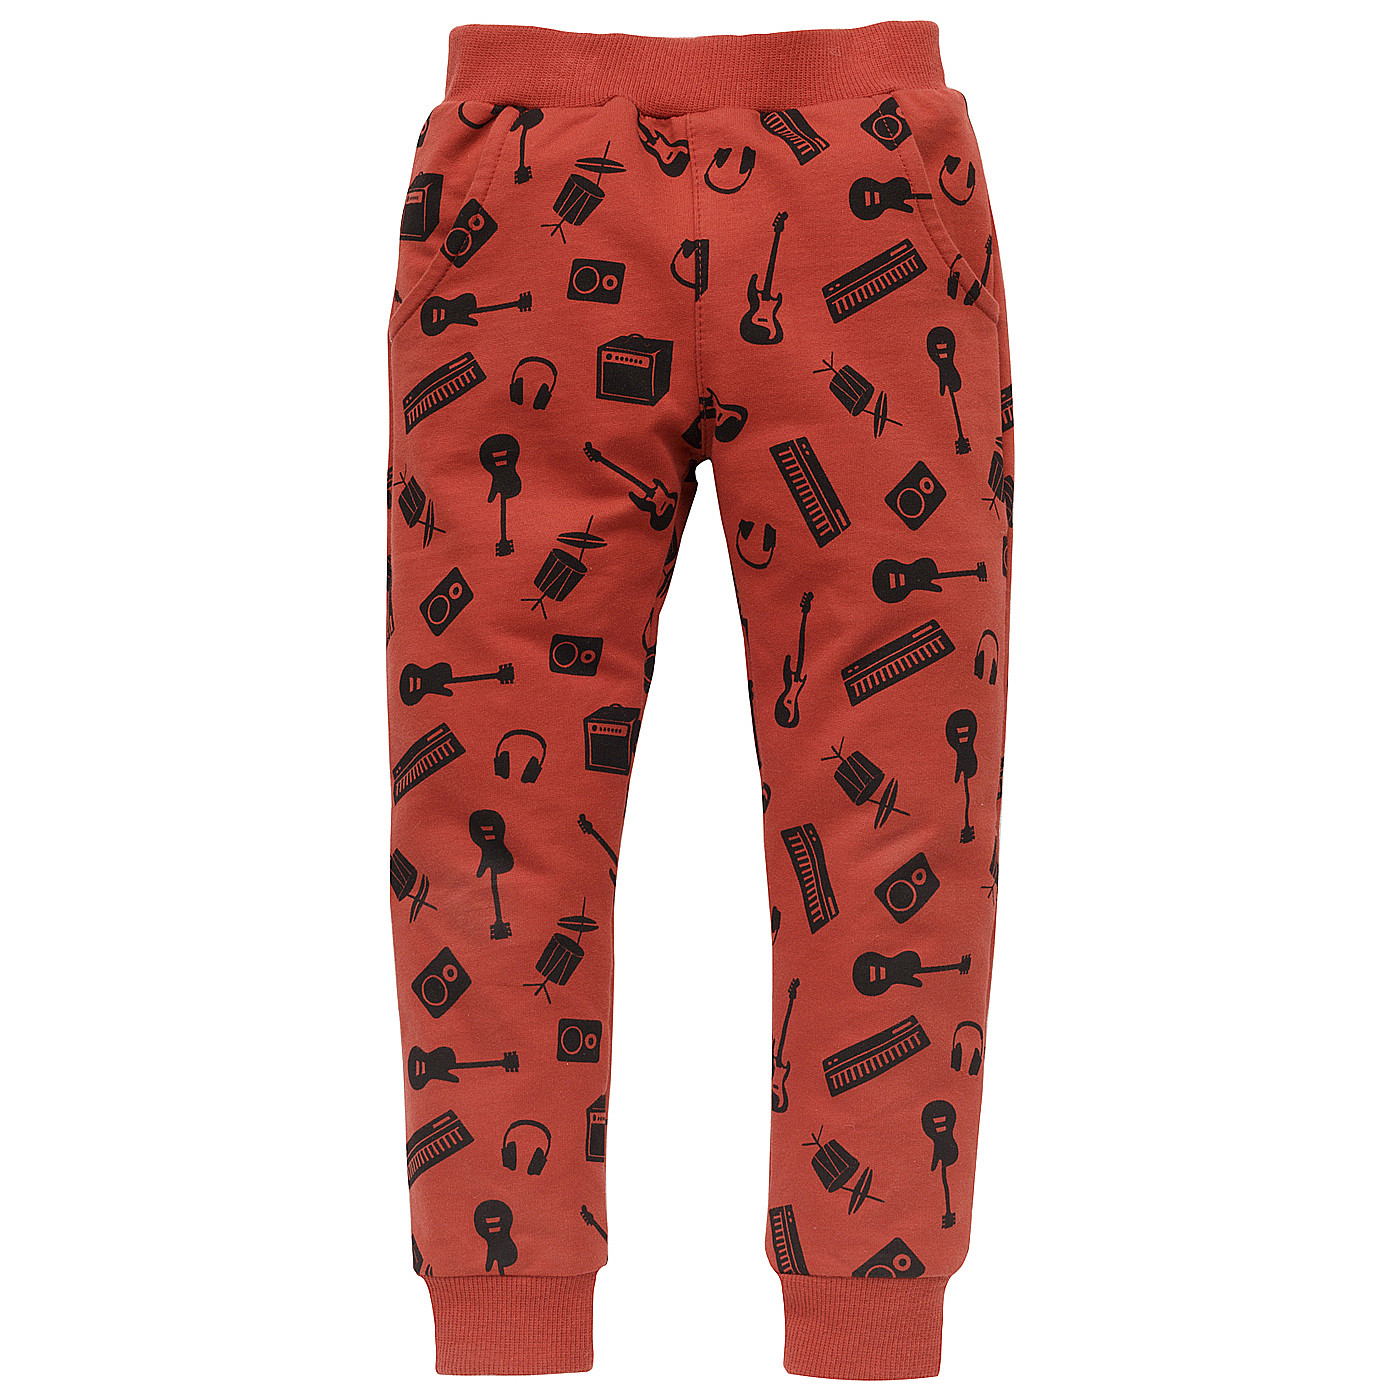 Pinokio Let's Rock Pants Red (Červené kalhoty) 86